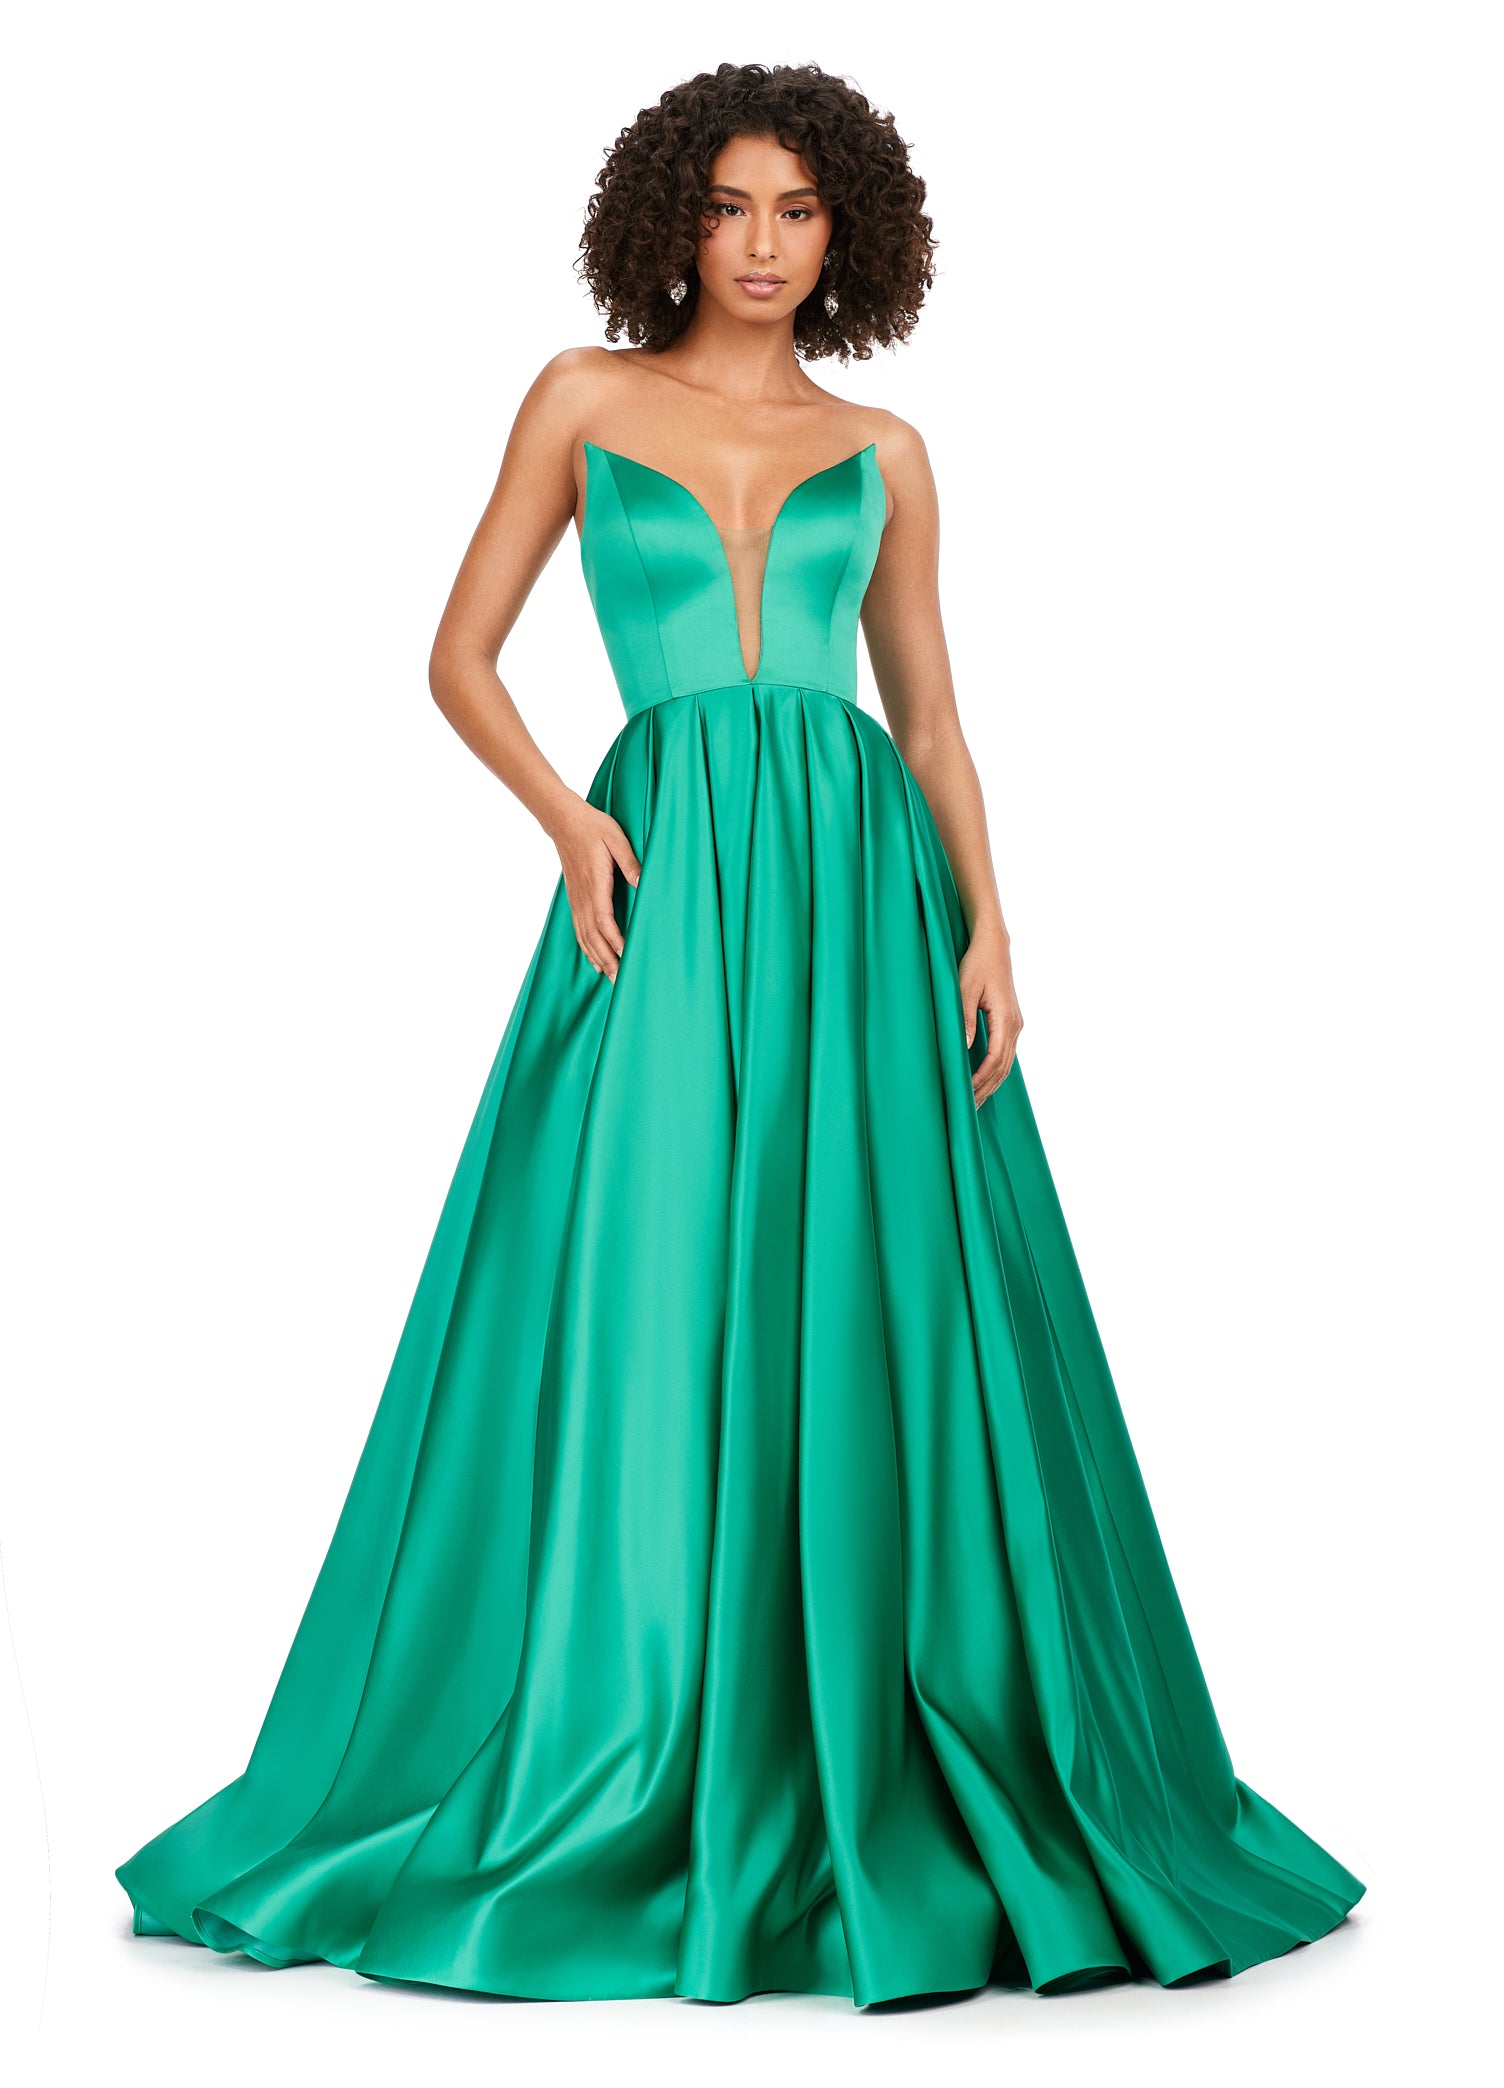 Emerald Green Strapless A-line Evening Dress,Emerald Green Satin